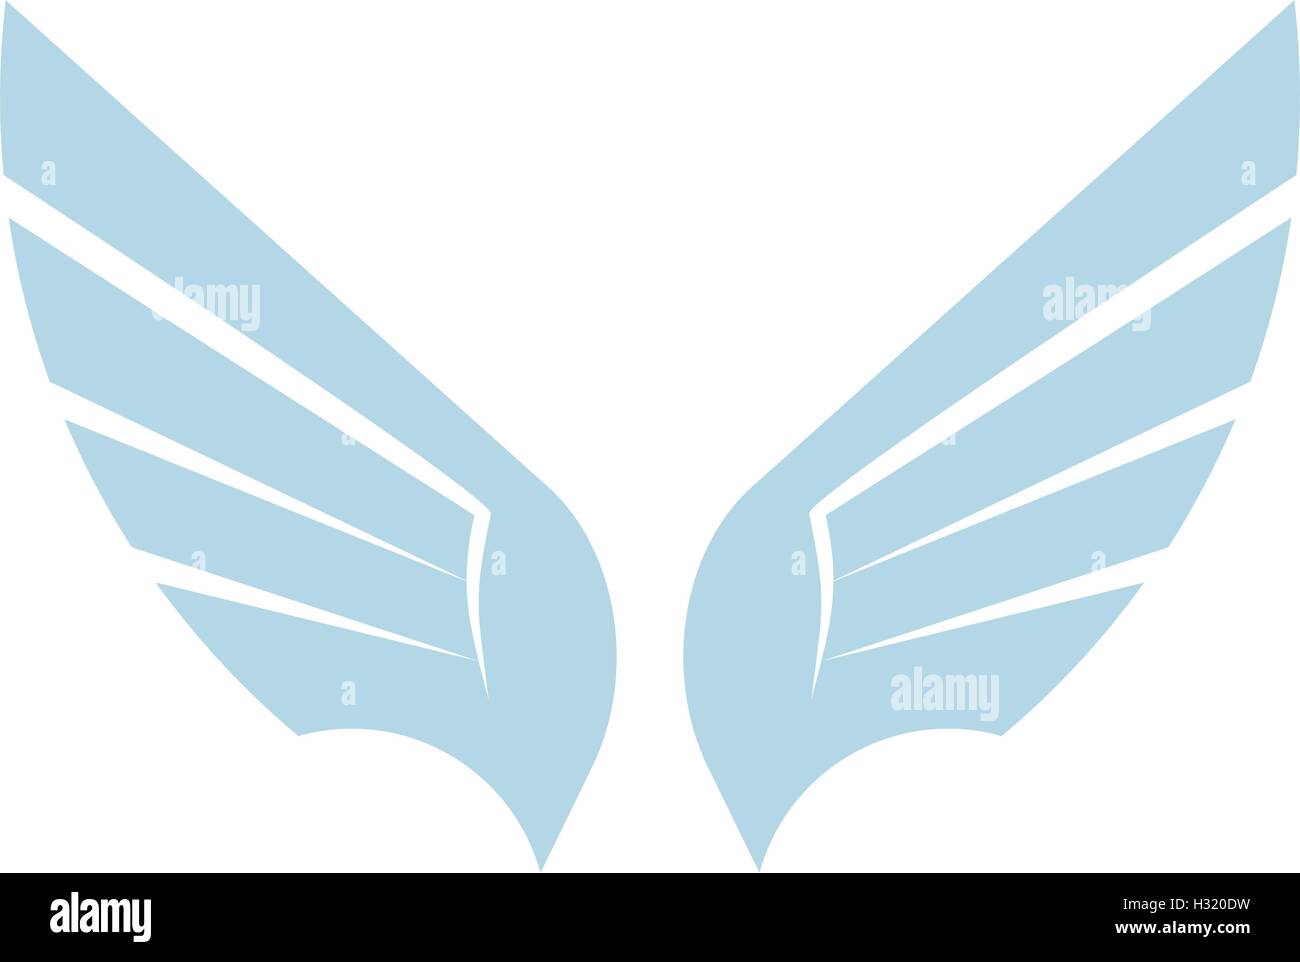 Isolierte abstrakt blau Vogel-Element-Logo. Flügel mit Federn Schriftzug ausbreitet. Flug-Symbol. Luftzeichen. Vektor-Illustration. Airline-Symbol. Stock Vektor